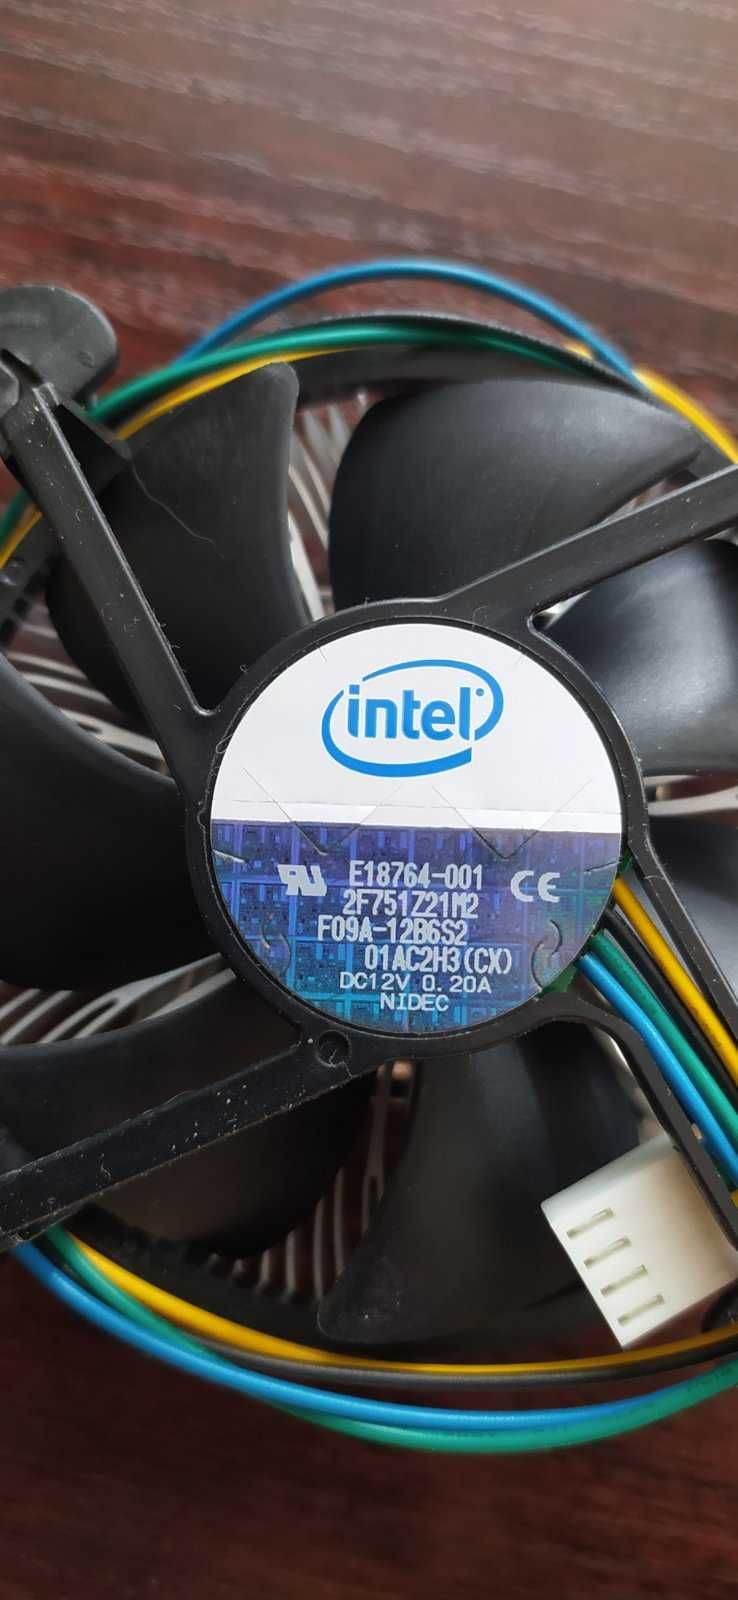 Intel Core 2 Duo E8200 2.66GHz/6M/1333 с системой охлаждения в сборе